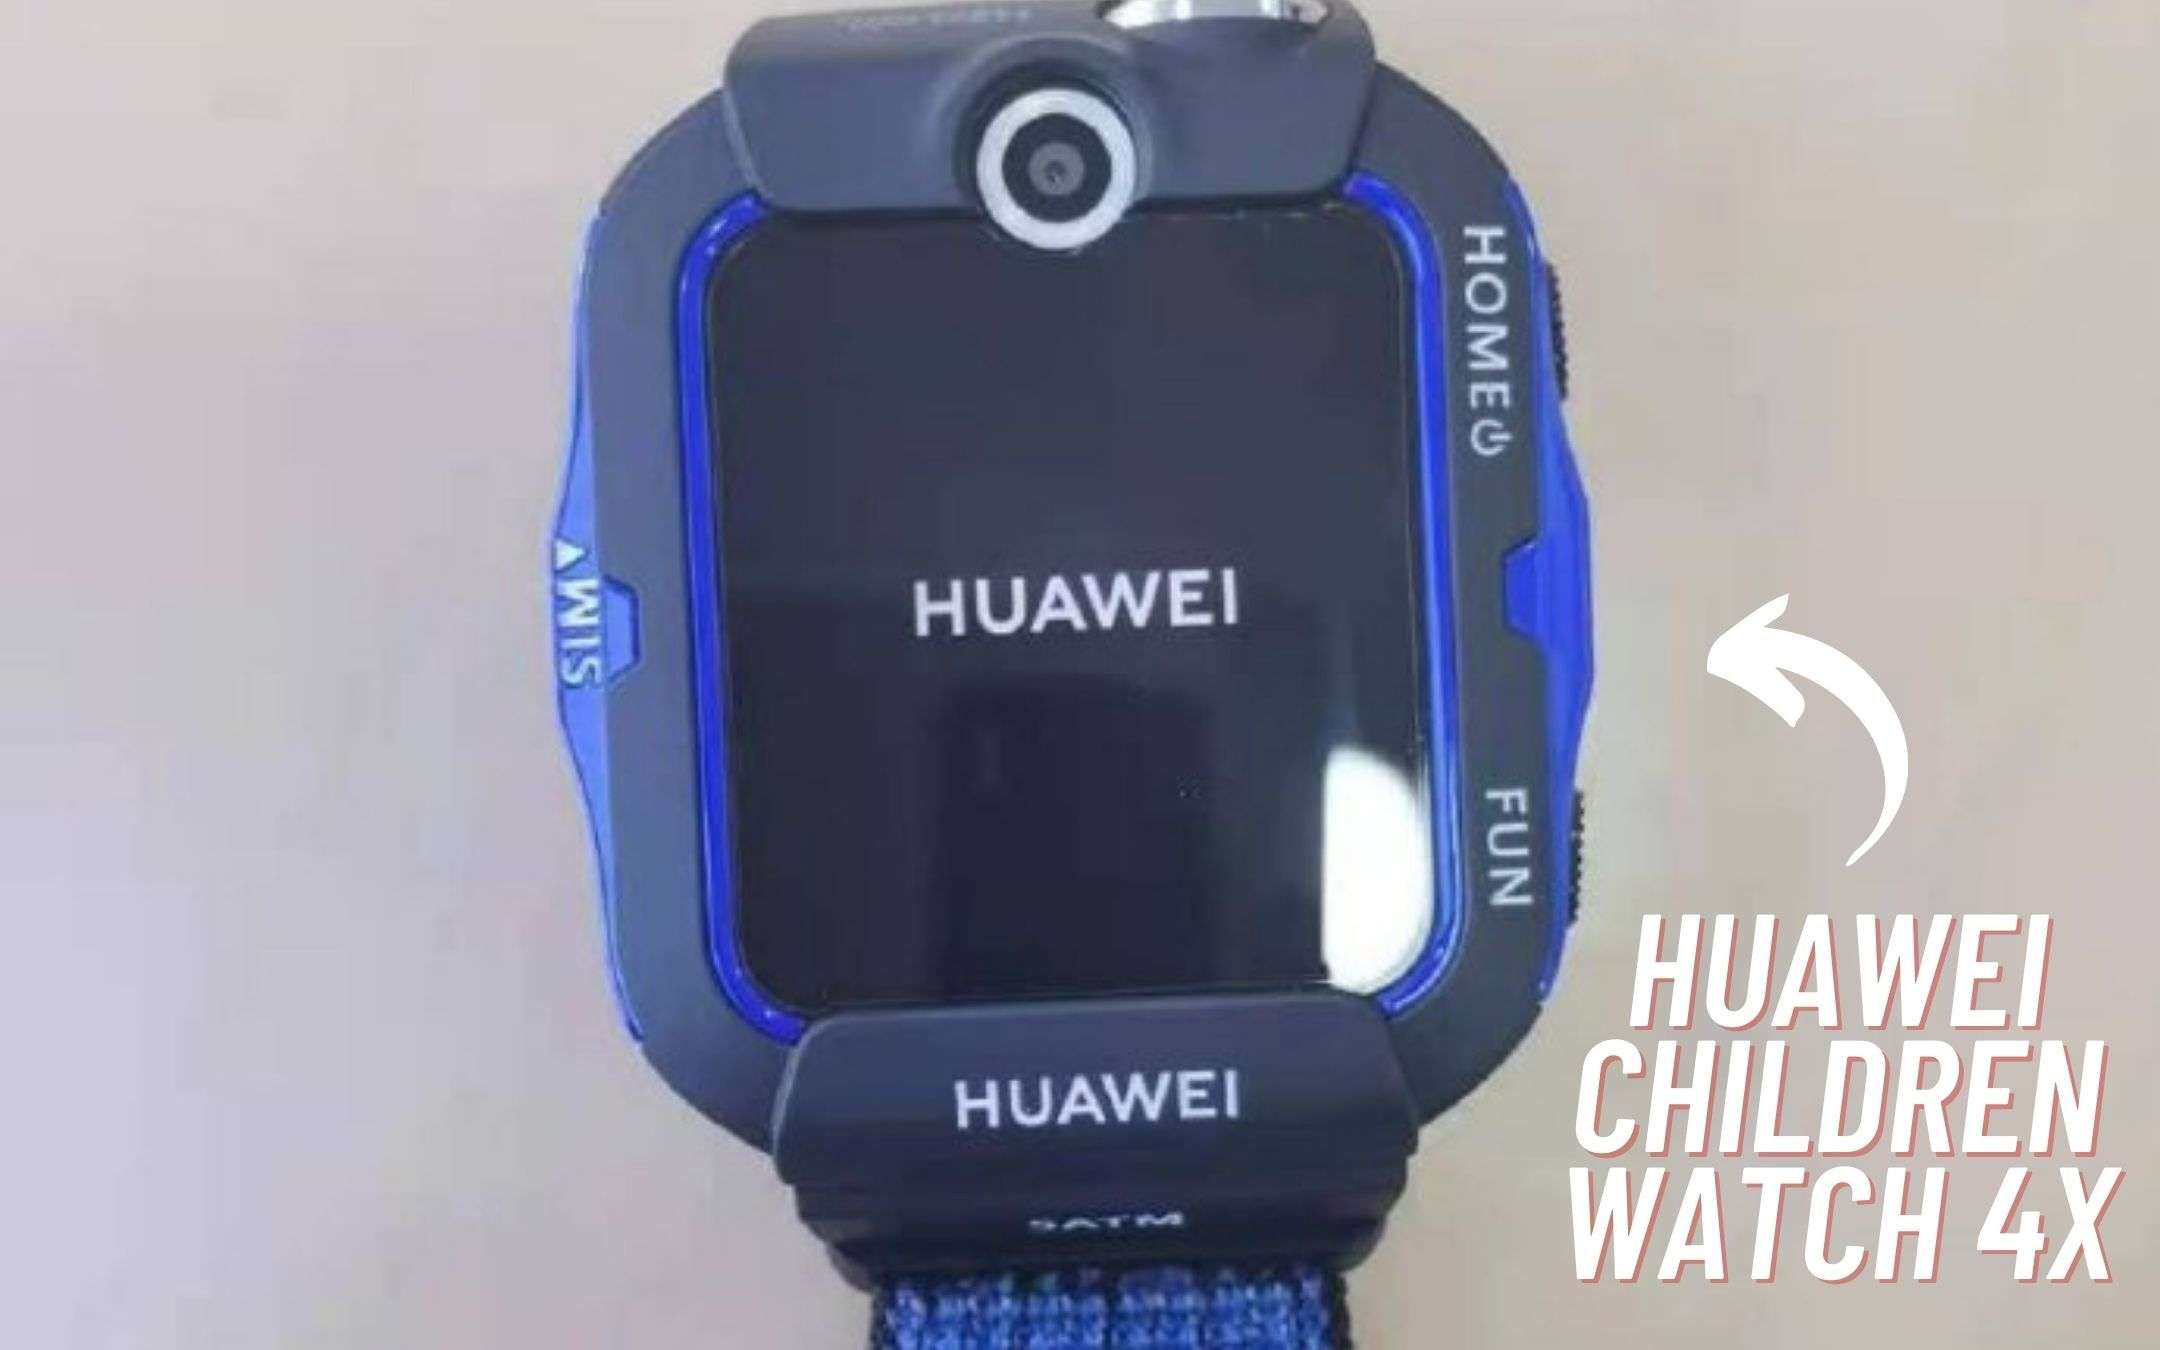 Huawei Children Watch 4X: un nuovo modello in arrivo